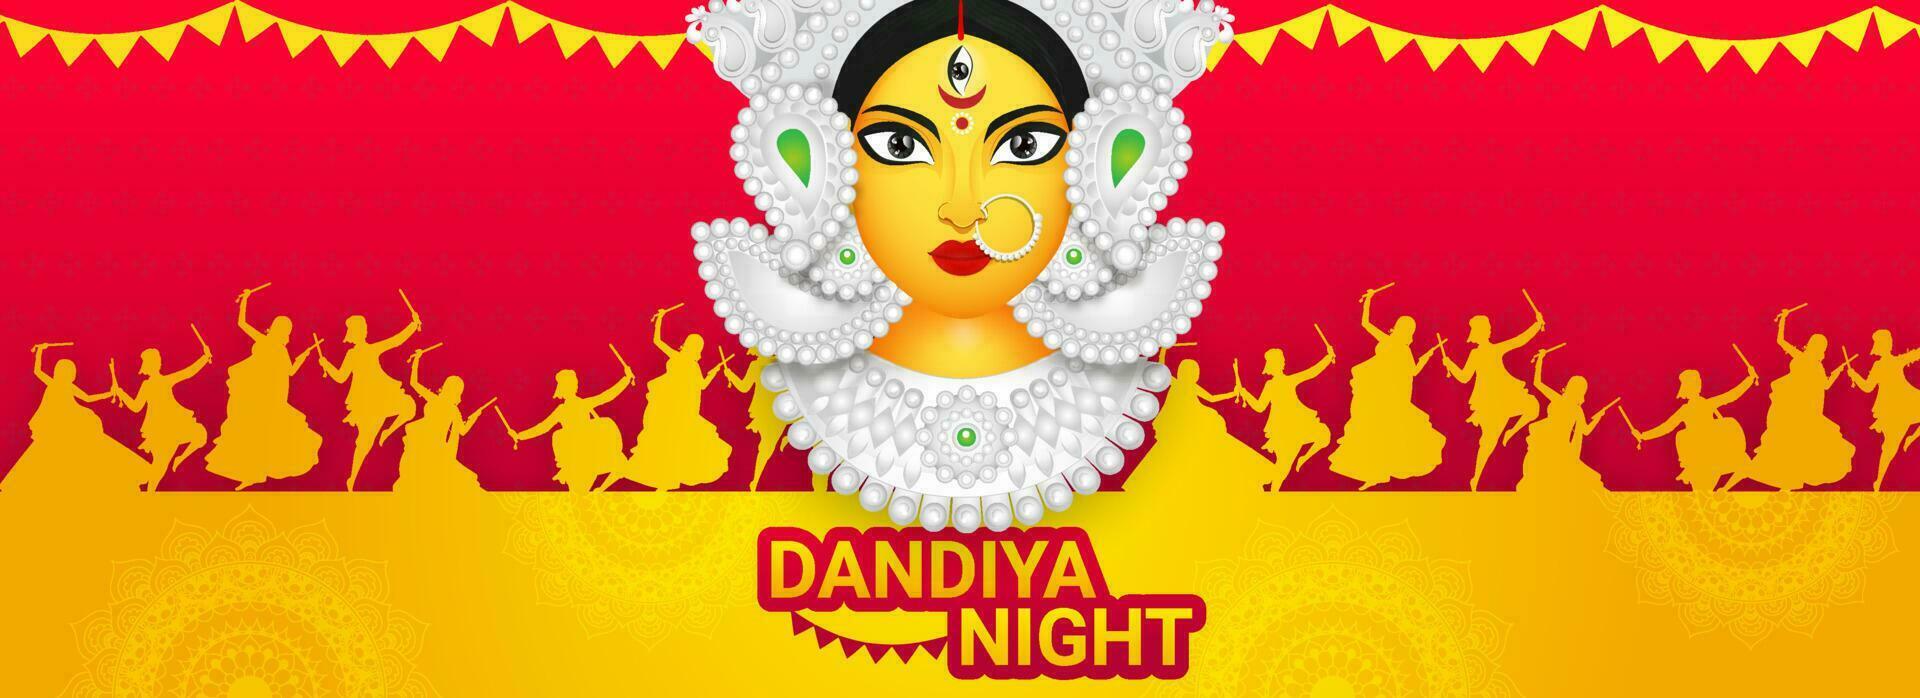 Dandiya Nacht Header oder Banner Design mit Illustration von Göttin Durga maa und Menschen Dandiya tanzen auf rot und Gelb Hintergrund. vektor